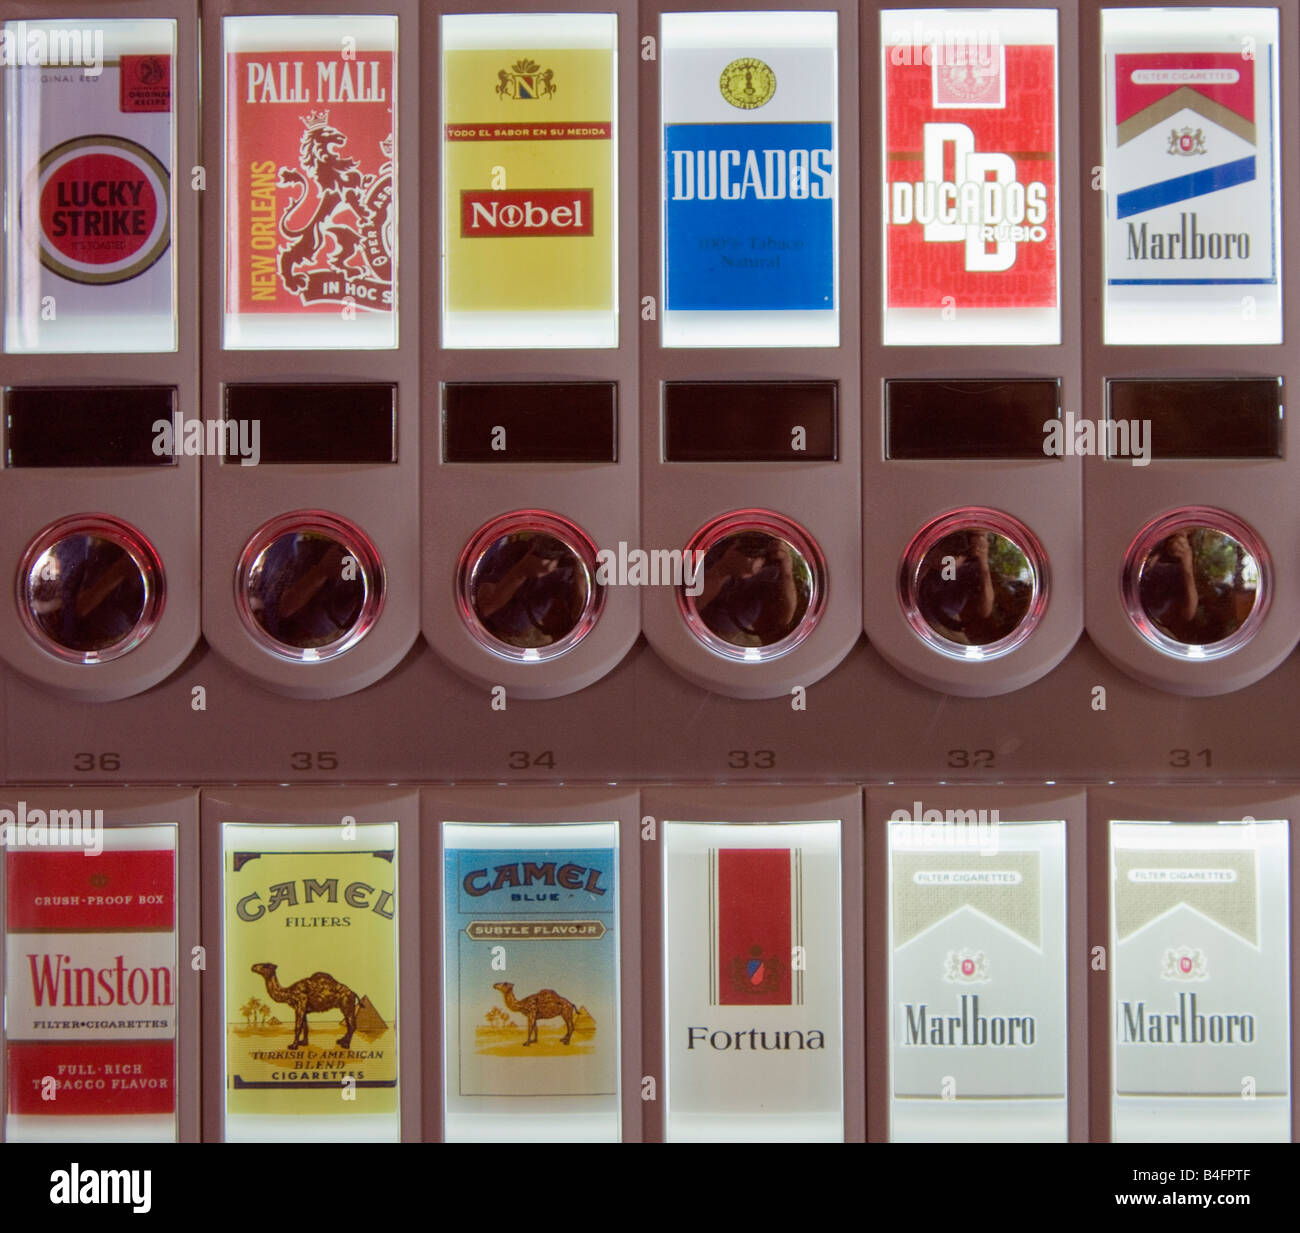 american brand of cigarette